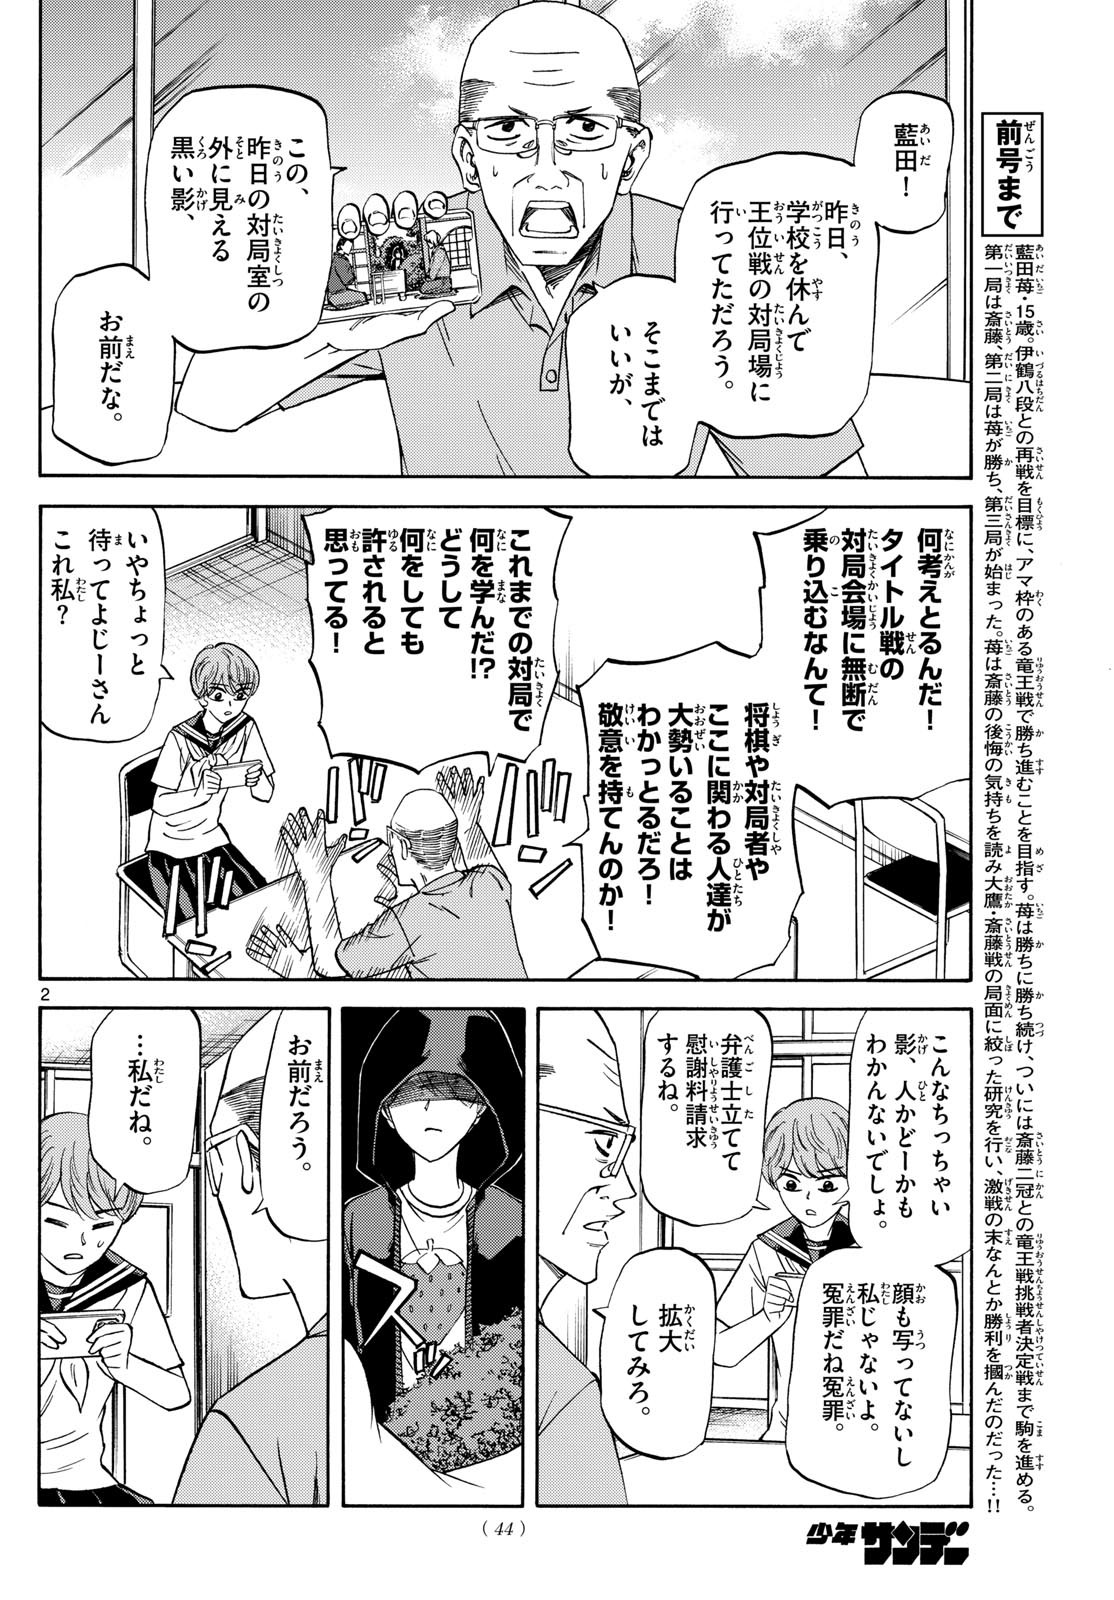 Ryu-to-Ichigo - Chapter 147 - Page 2